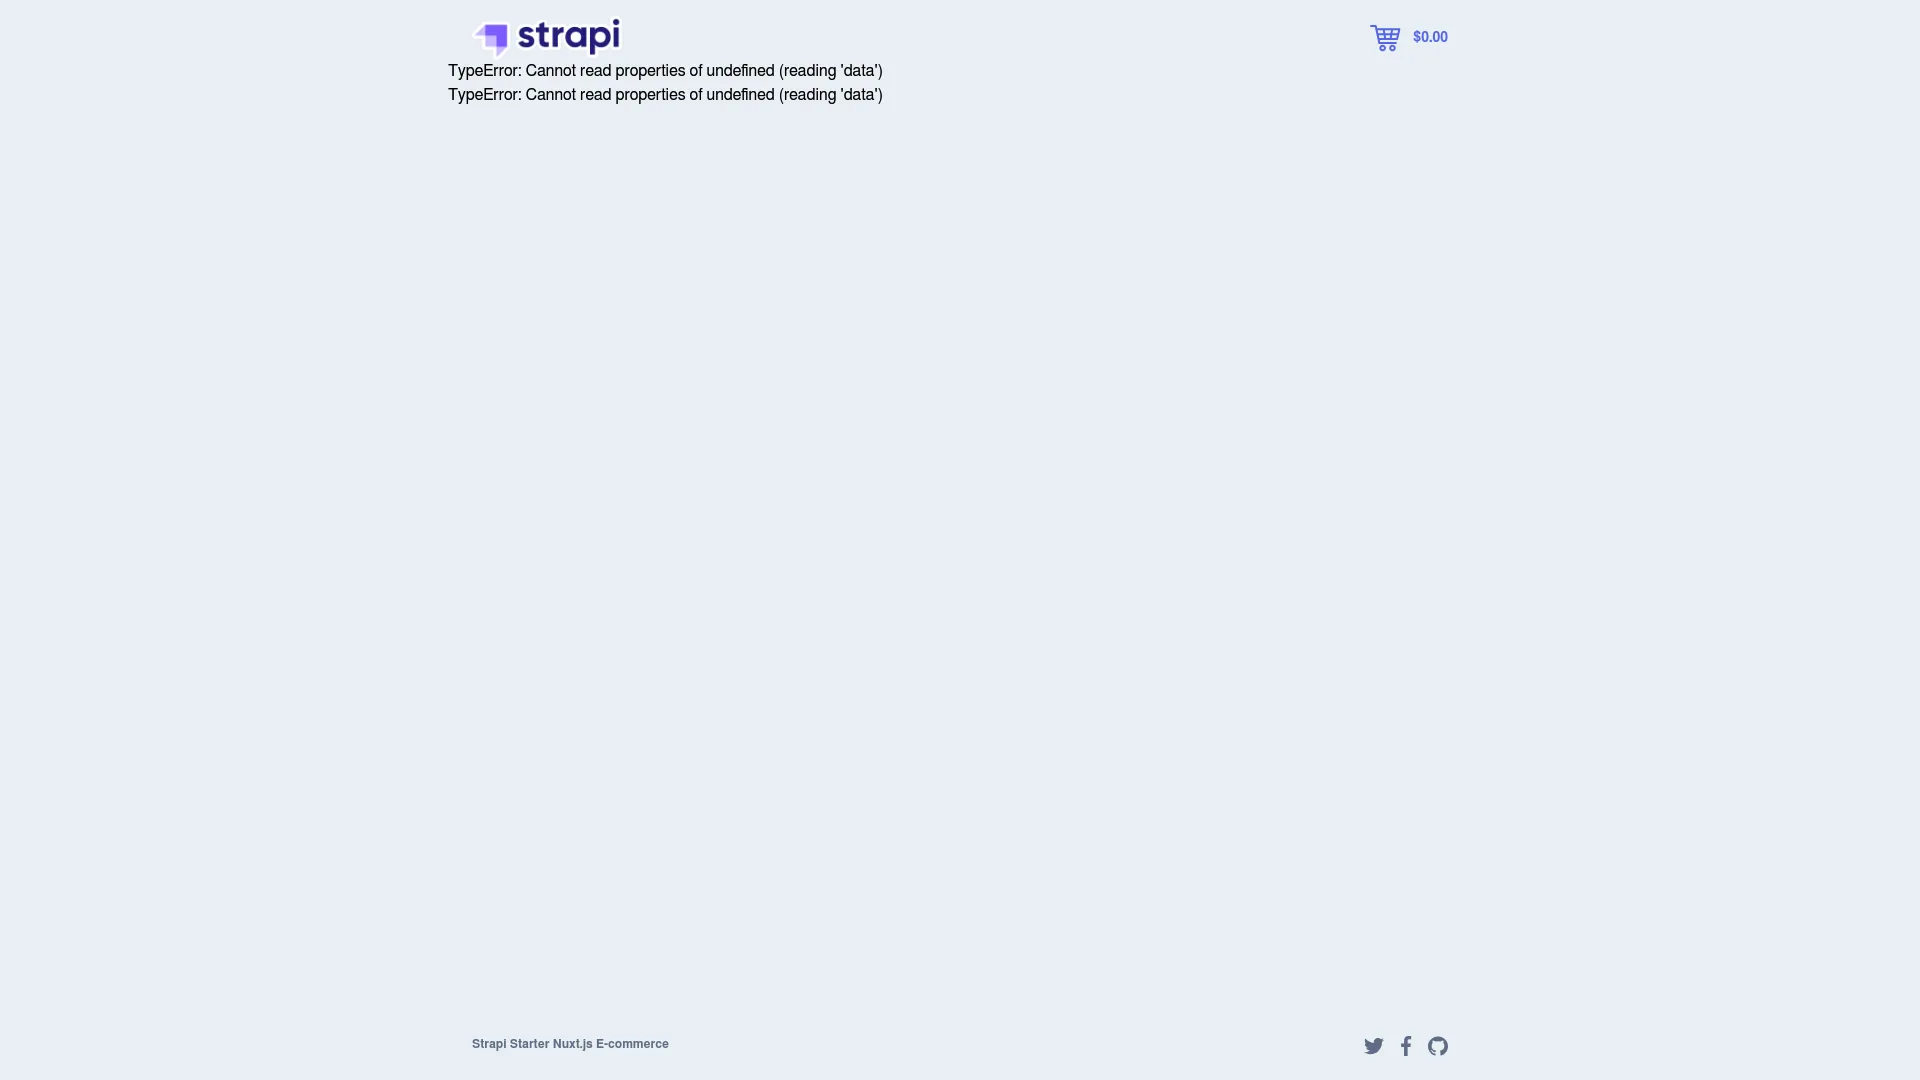 Strapi Starter Nuxt E Commerce screenshot